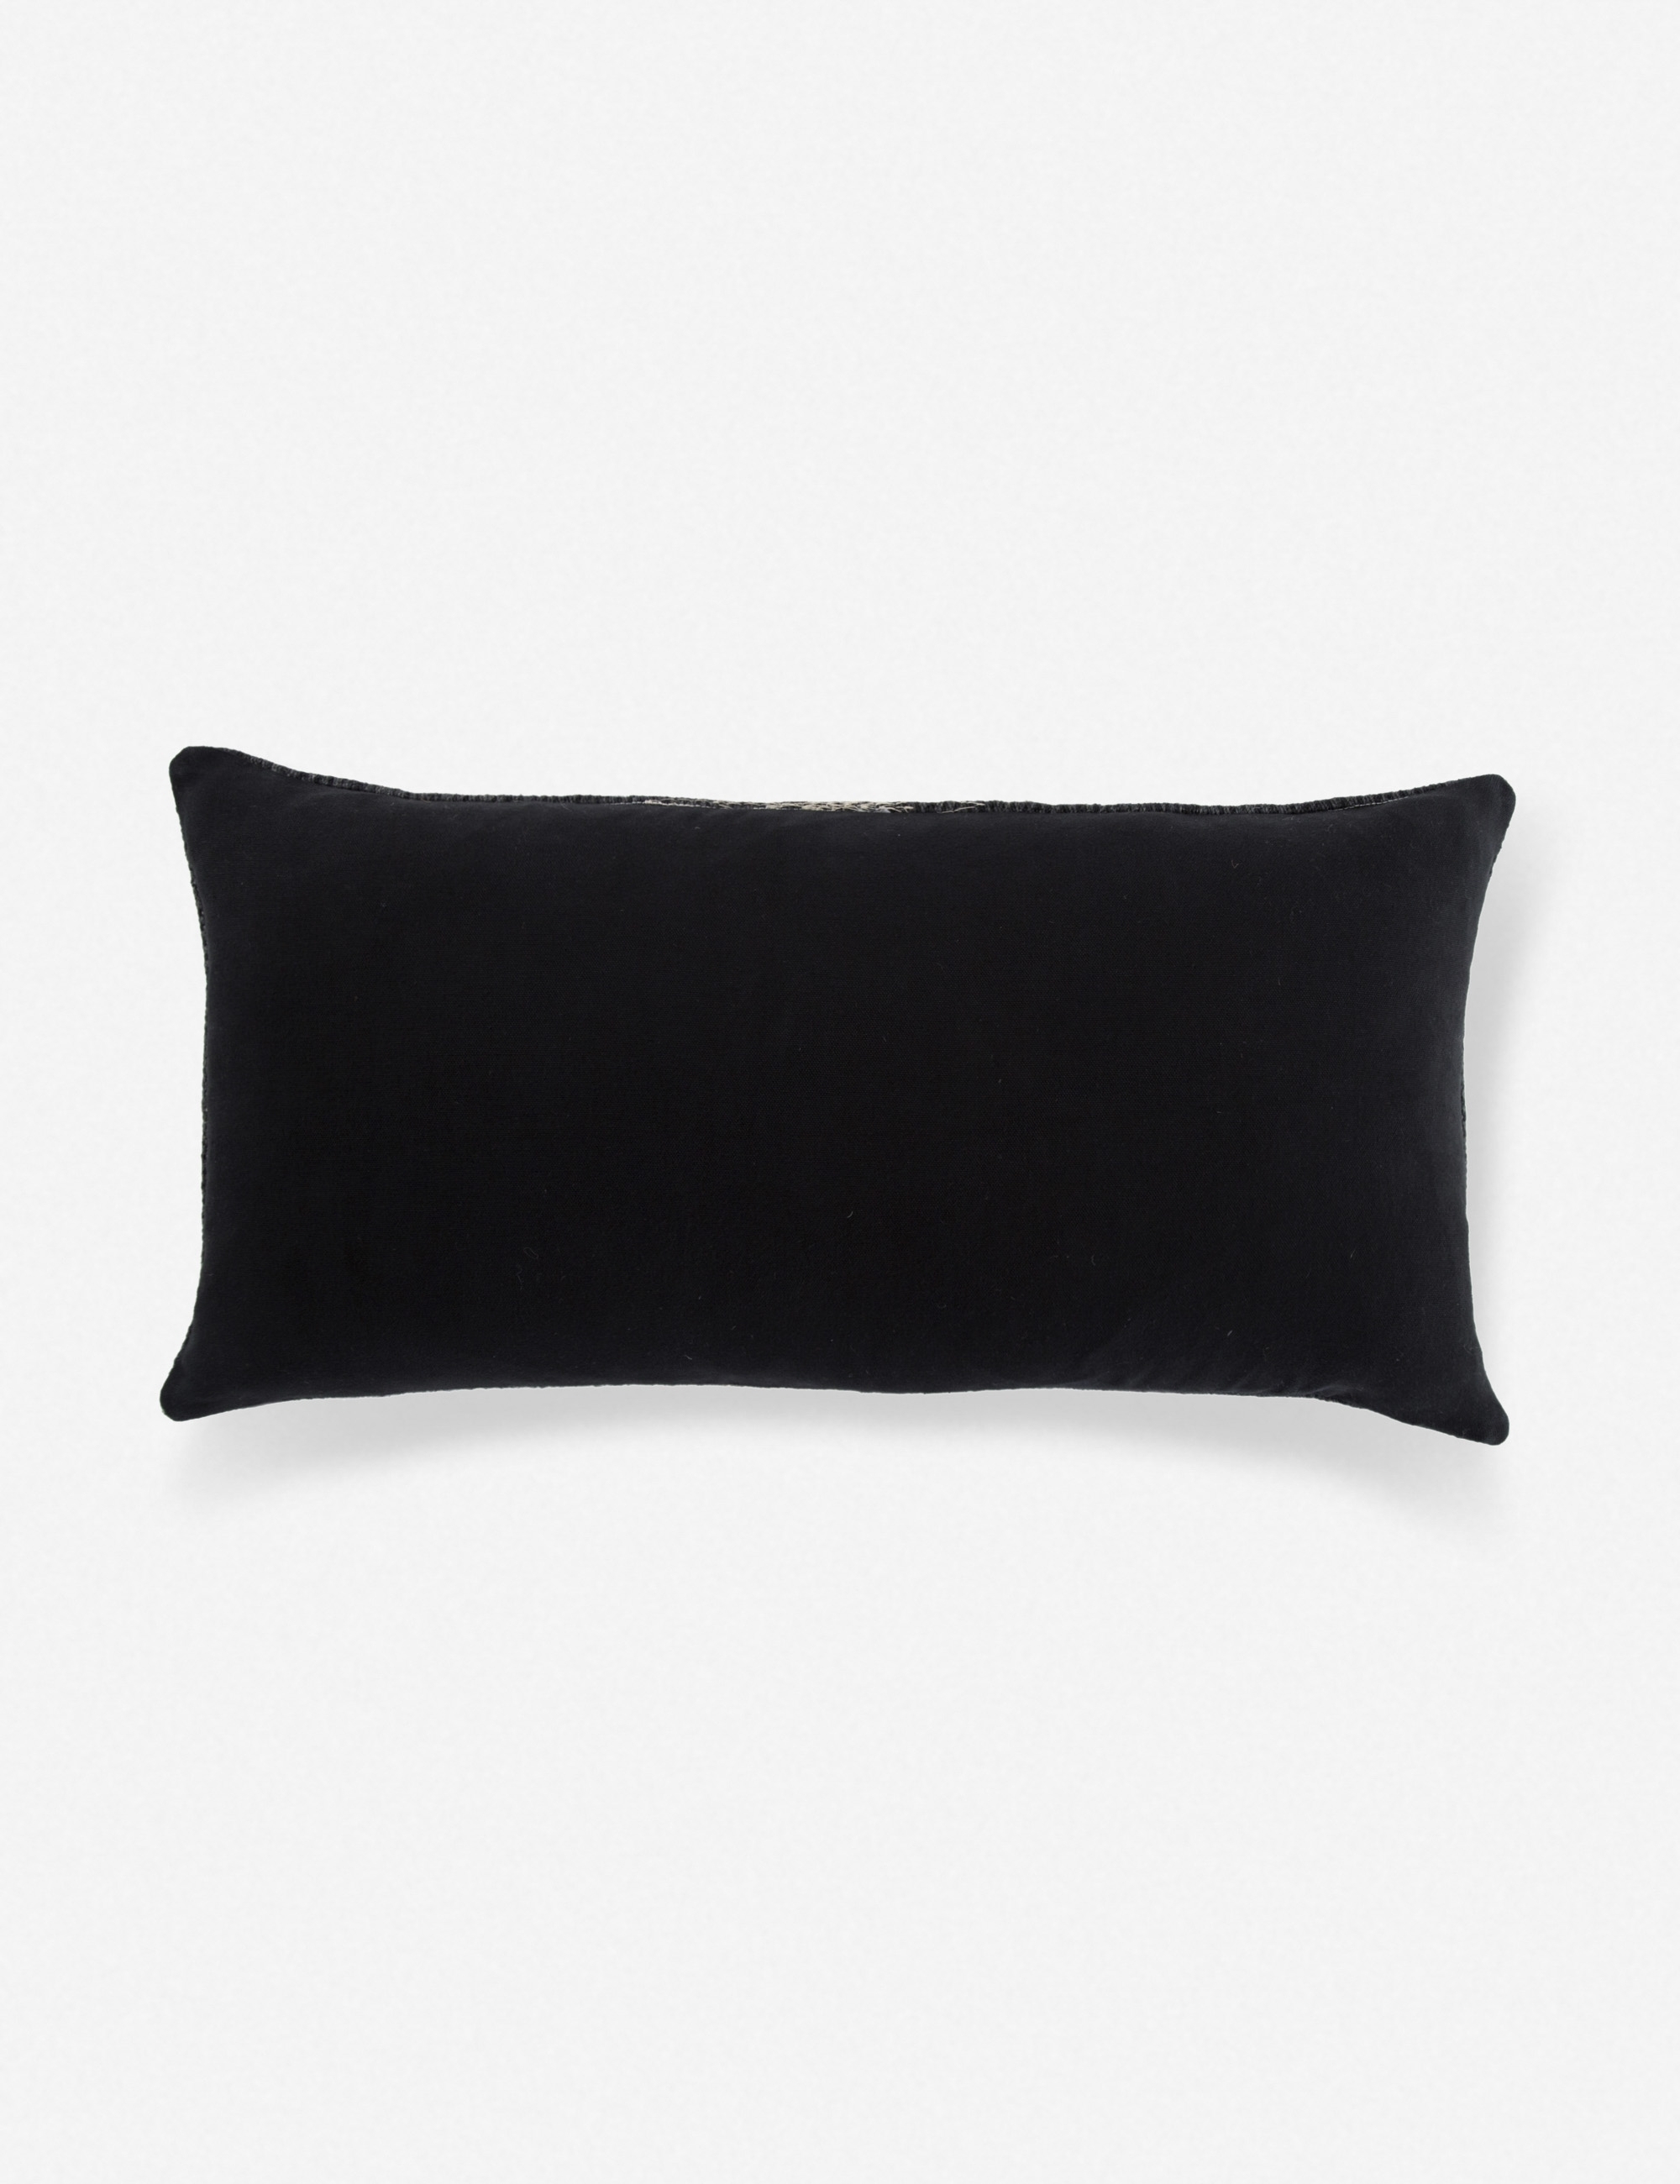 Ulsa Lumbar Pillow, Black and Gray - Image 1